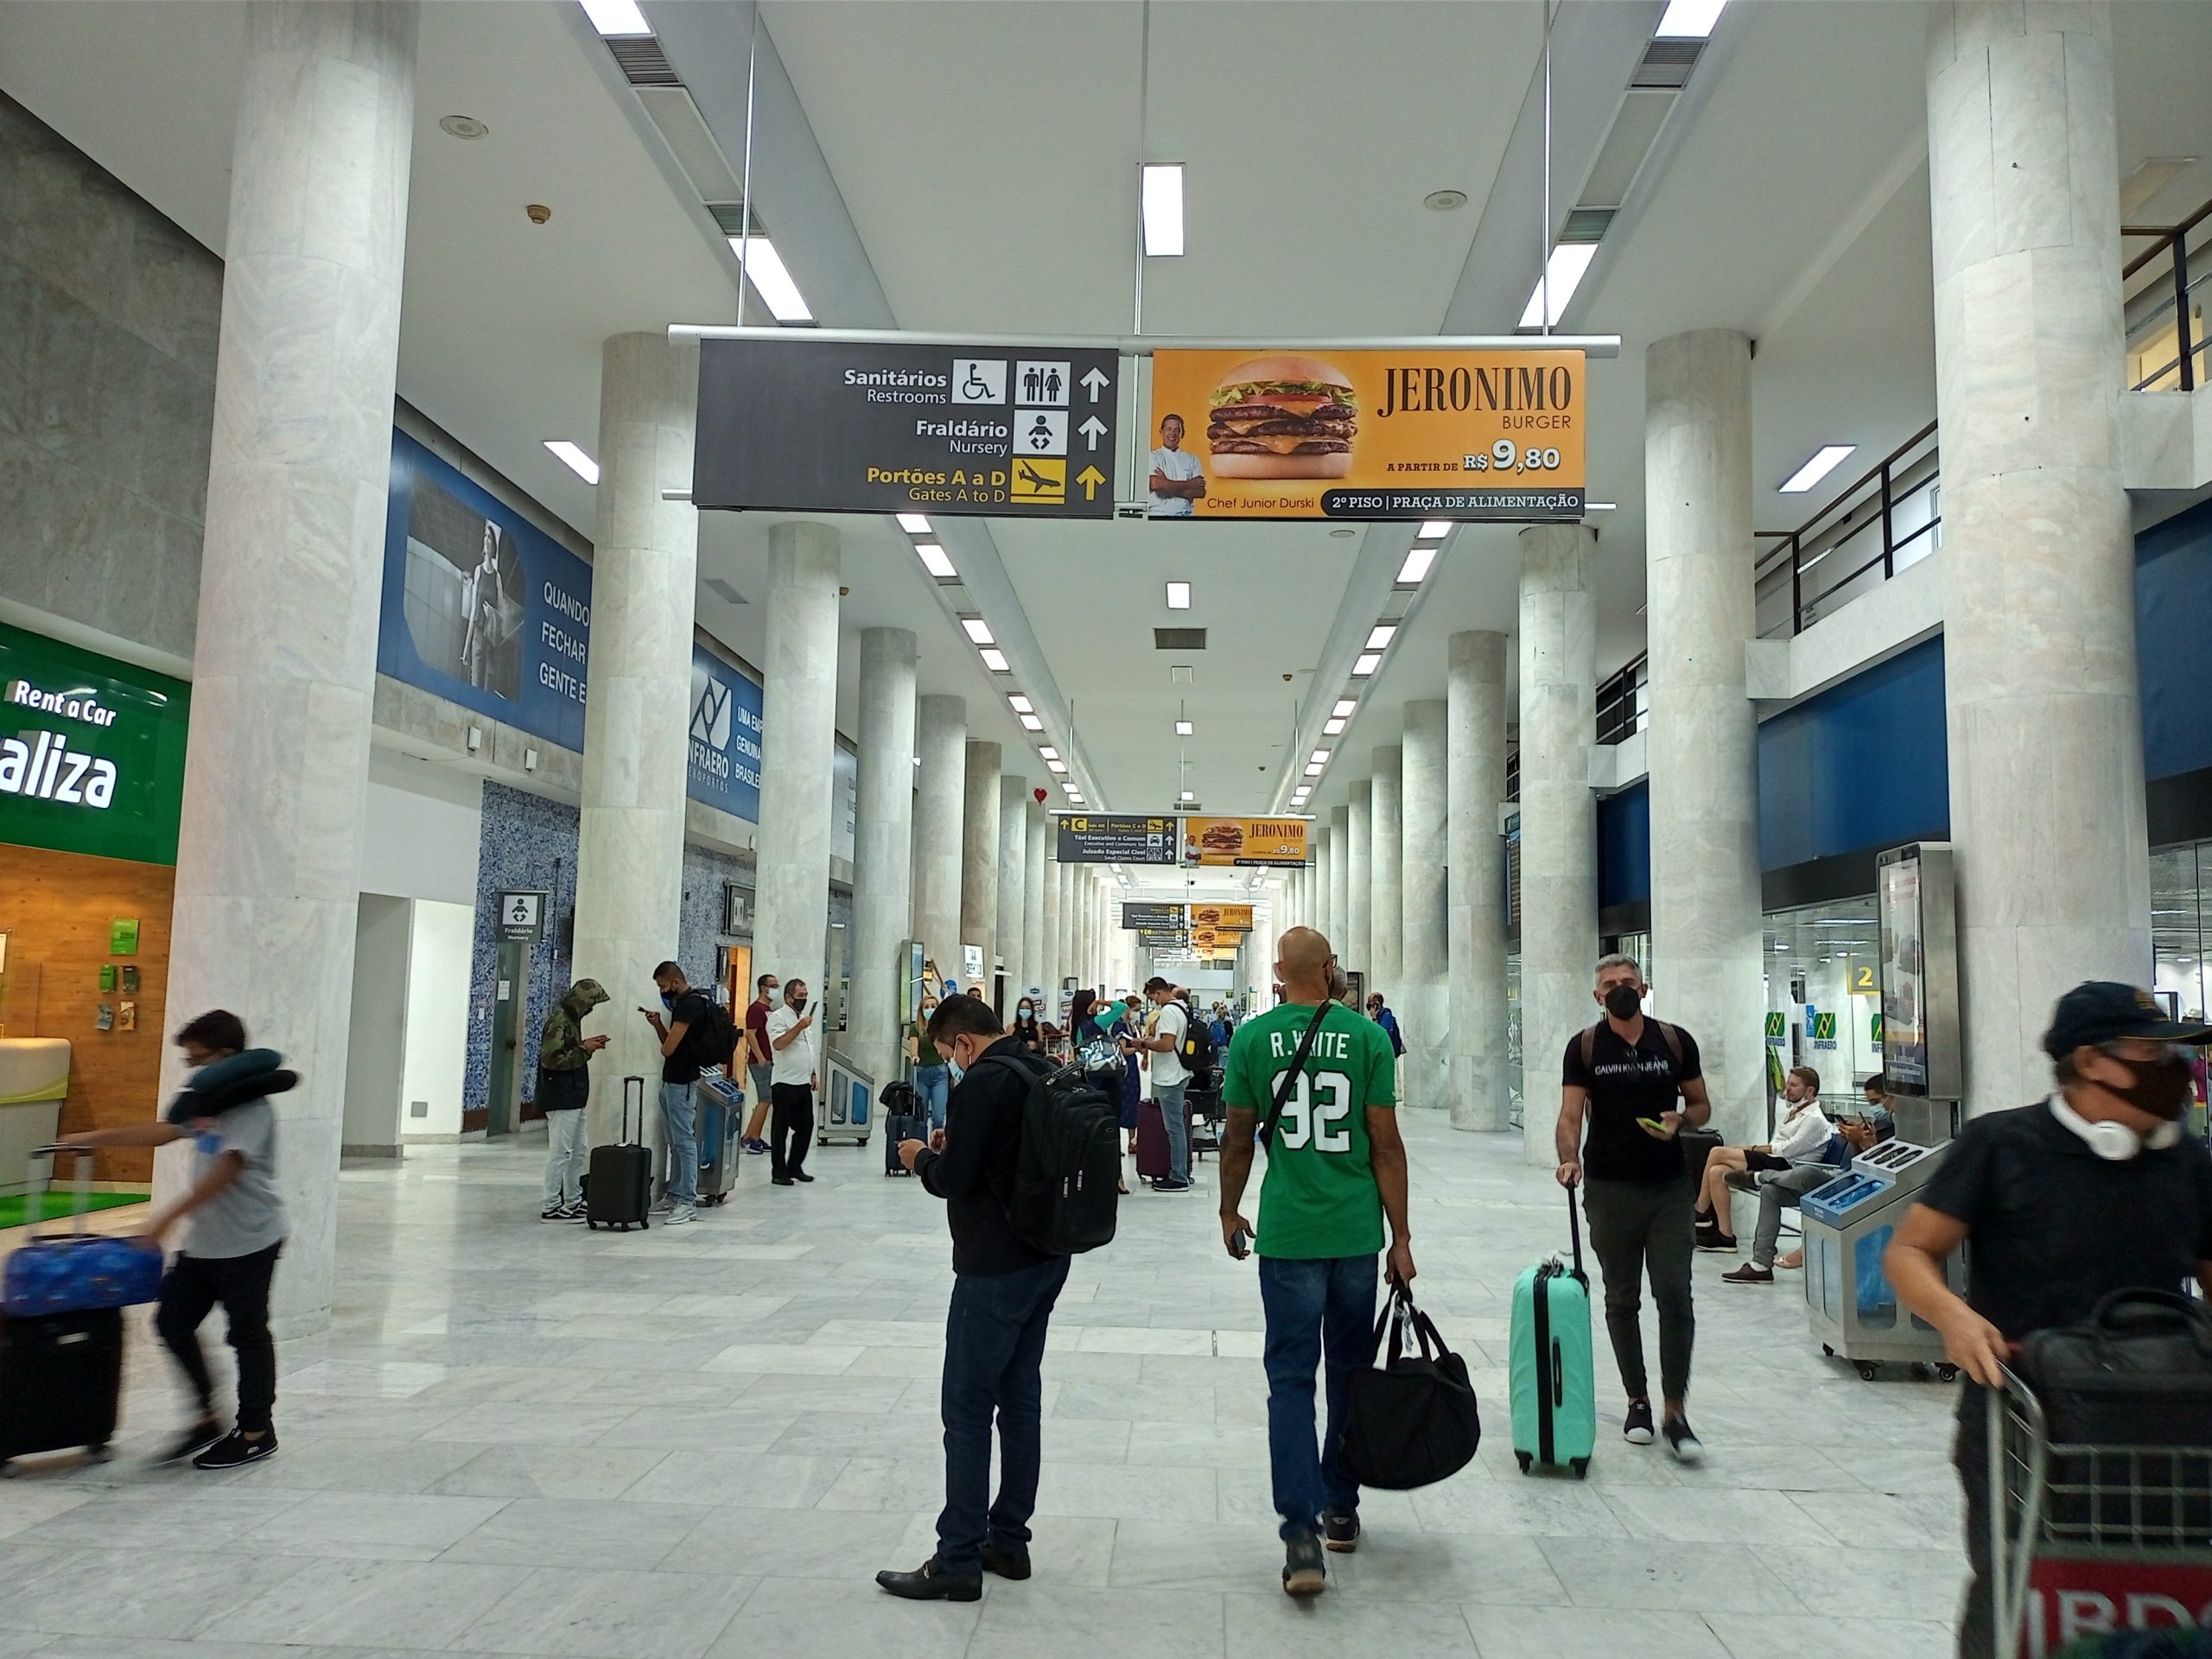 Placas de Sinalização - Saguão de desembarque - Aeroporto Santos Dumont (2)